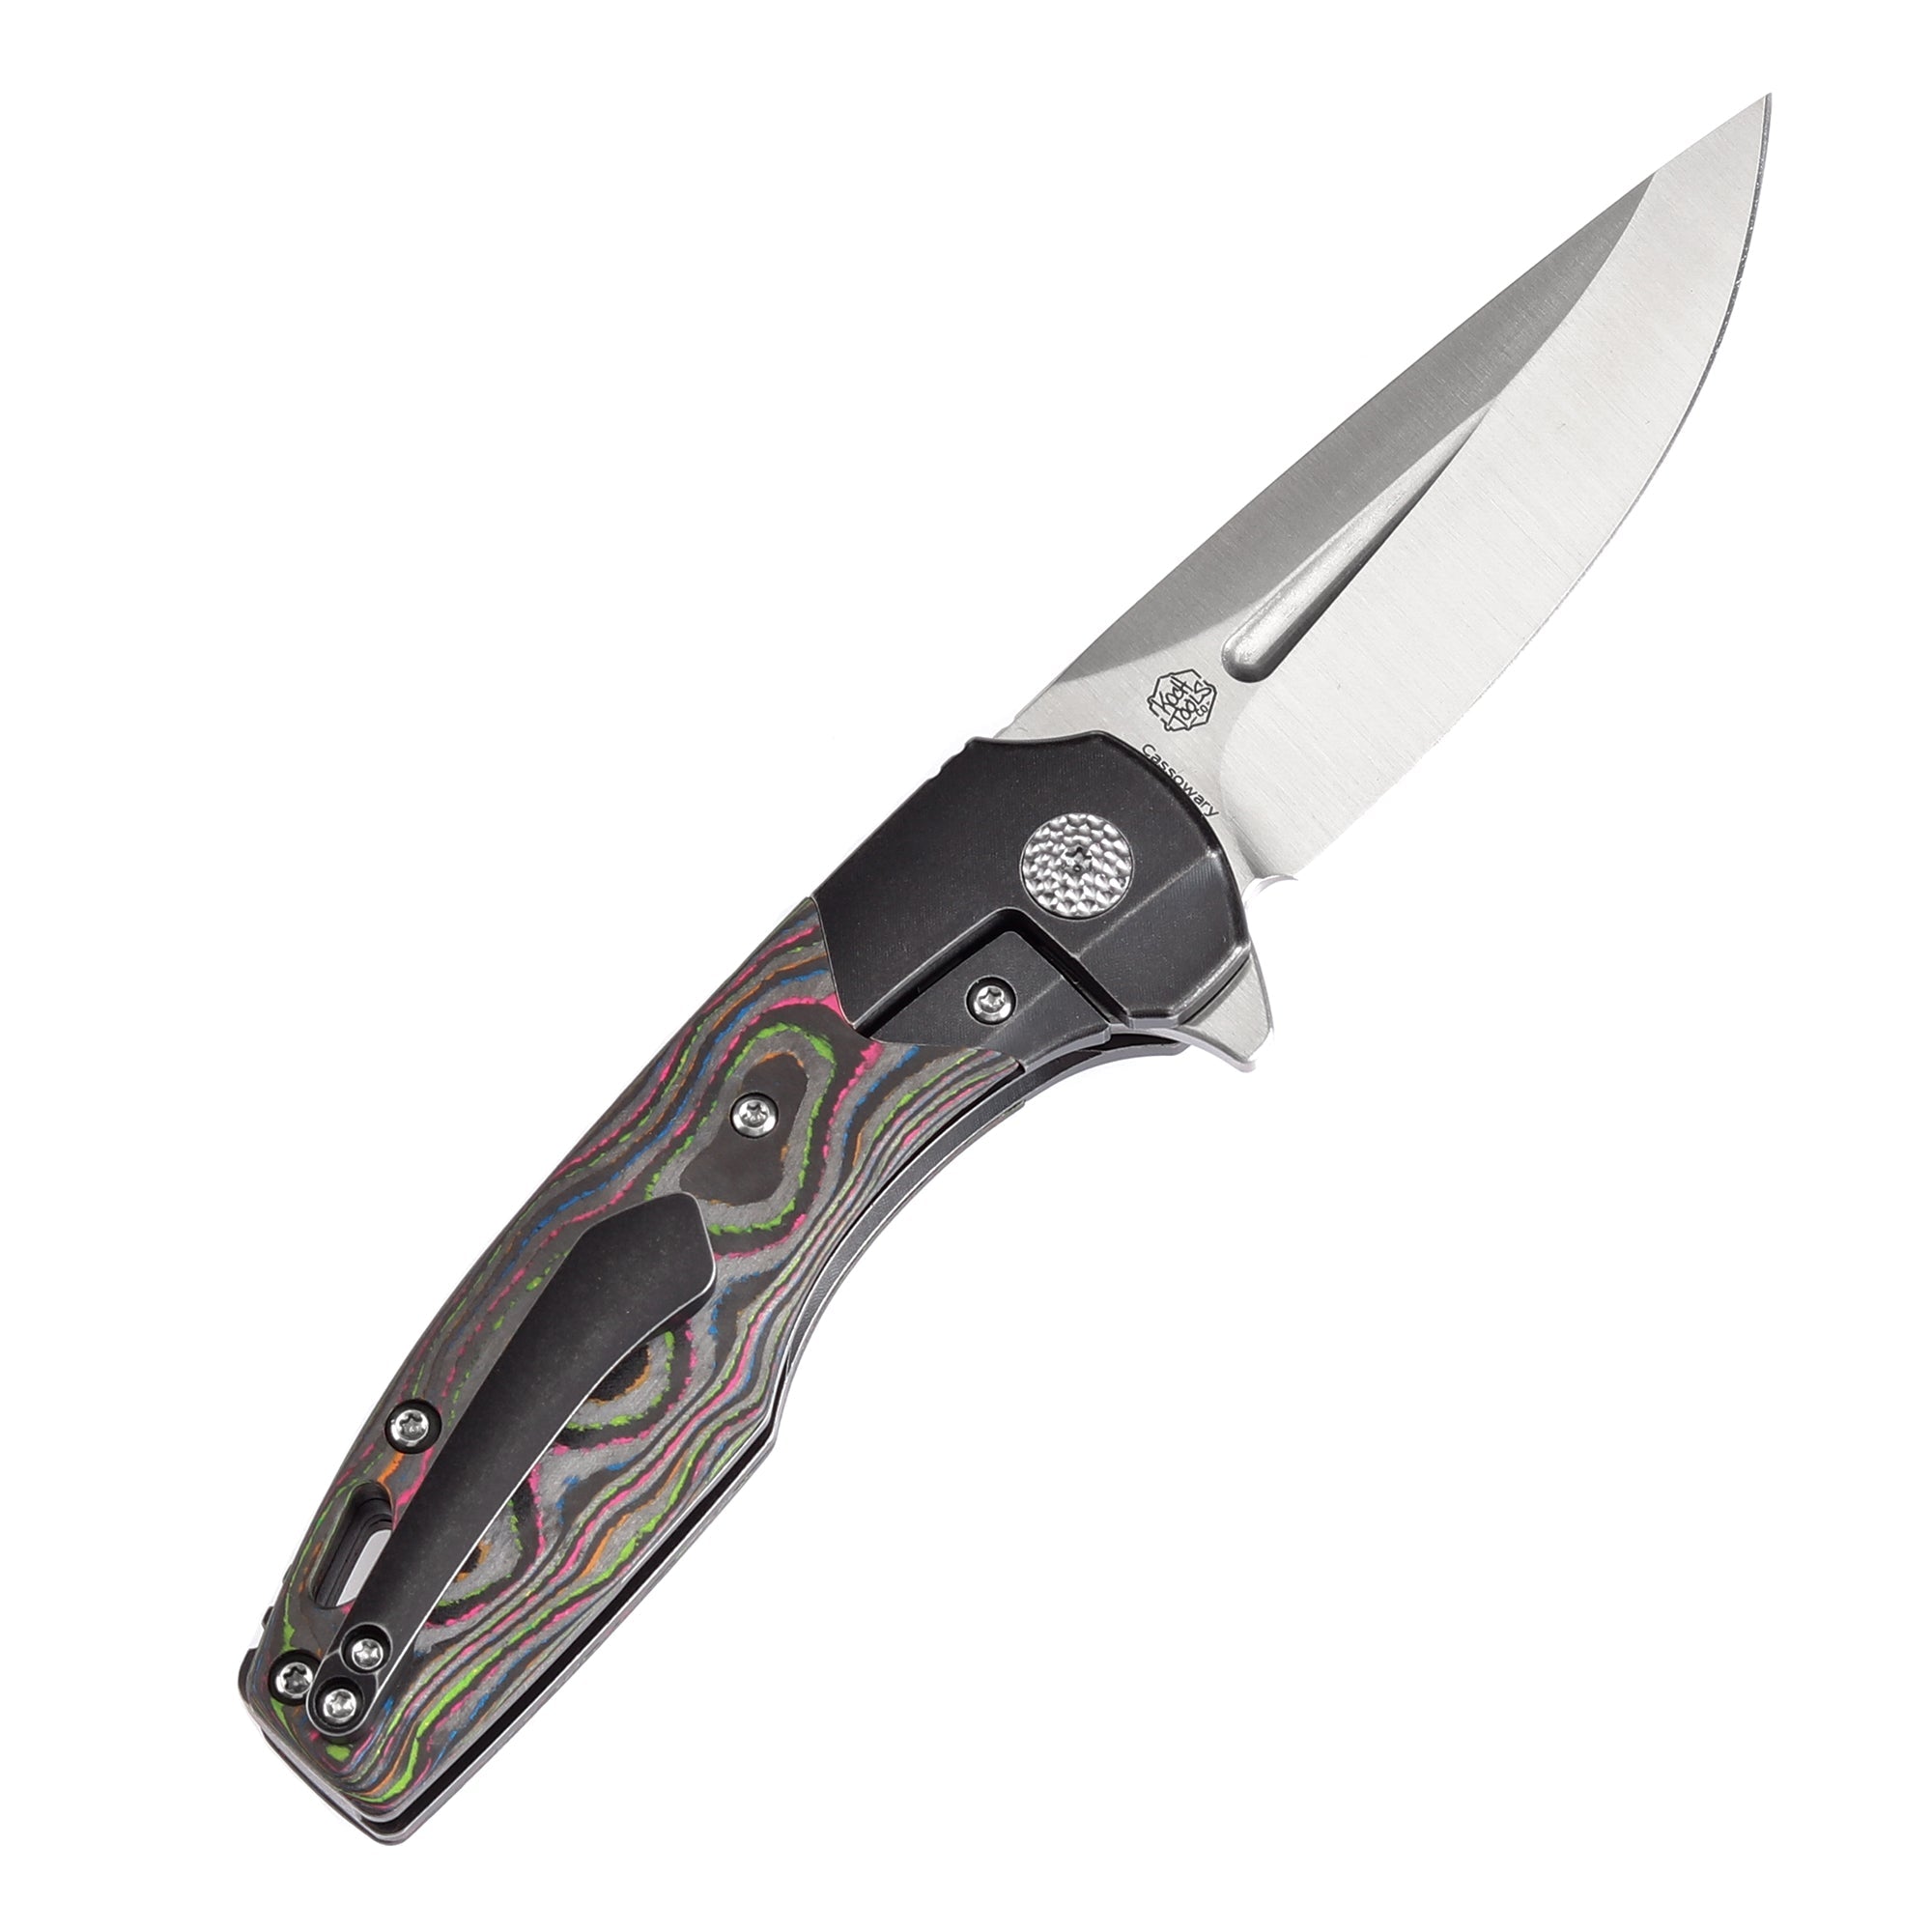 Kansept Cassowary K2065B1 CPM-S35VN Blade Titanium+Carbon Fiber Handle Edc Flipper Knife